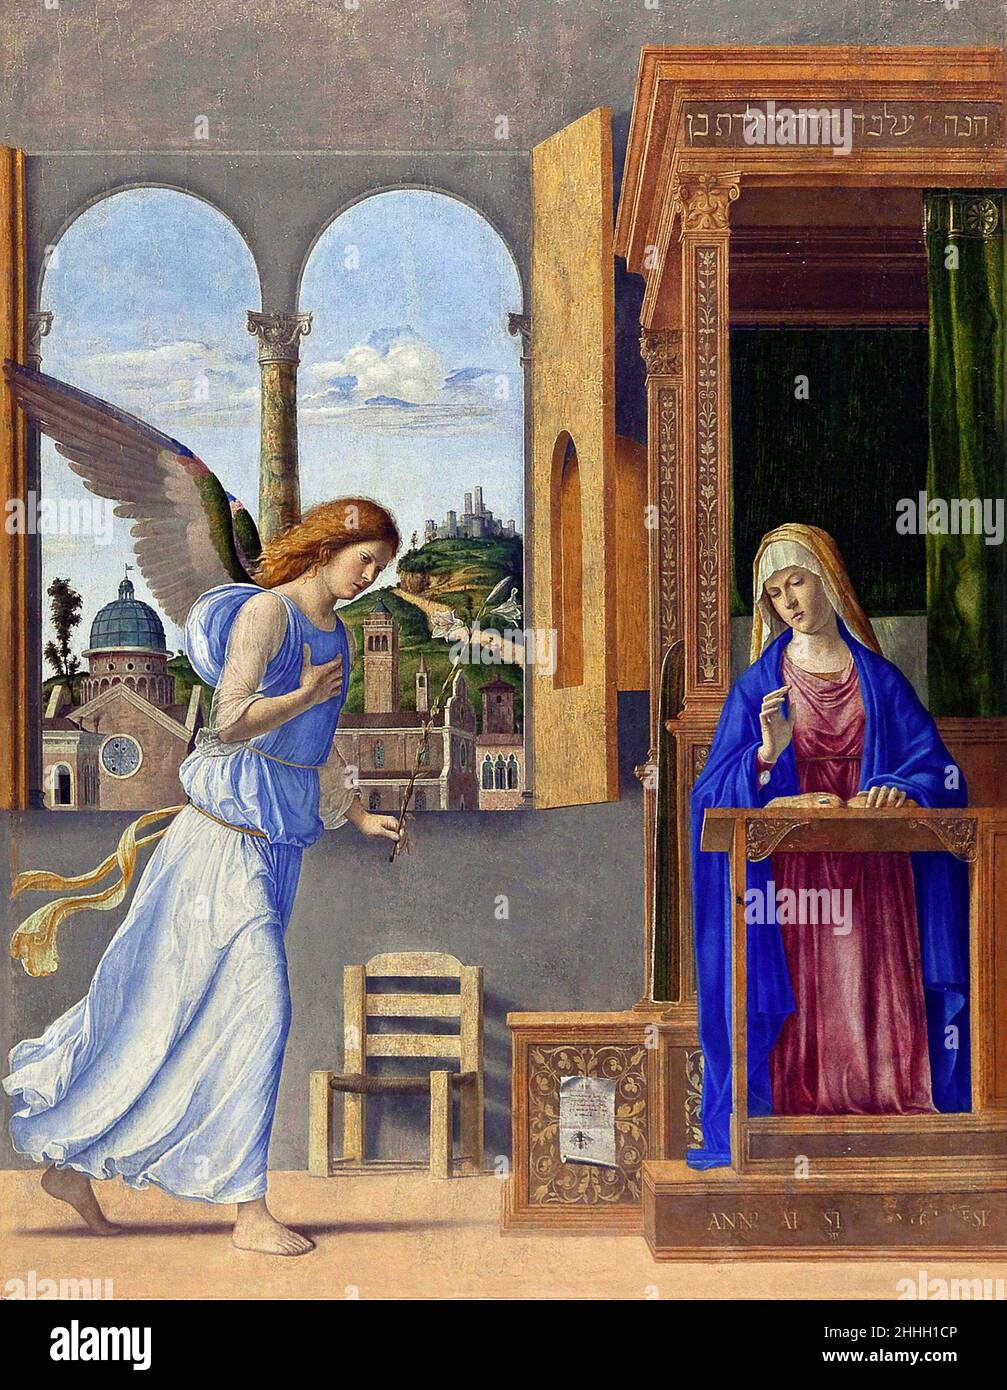 Verkündigung des italienischen Renaissance-Künstlers Giovanni Battista Cima da Conegliano (c. 1459 - c. 1517), Öl auf Leinwand, 1495 Stockfoto